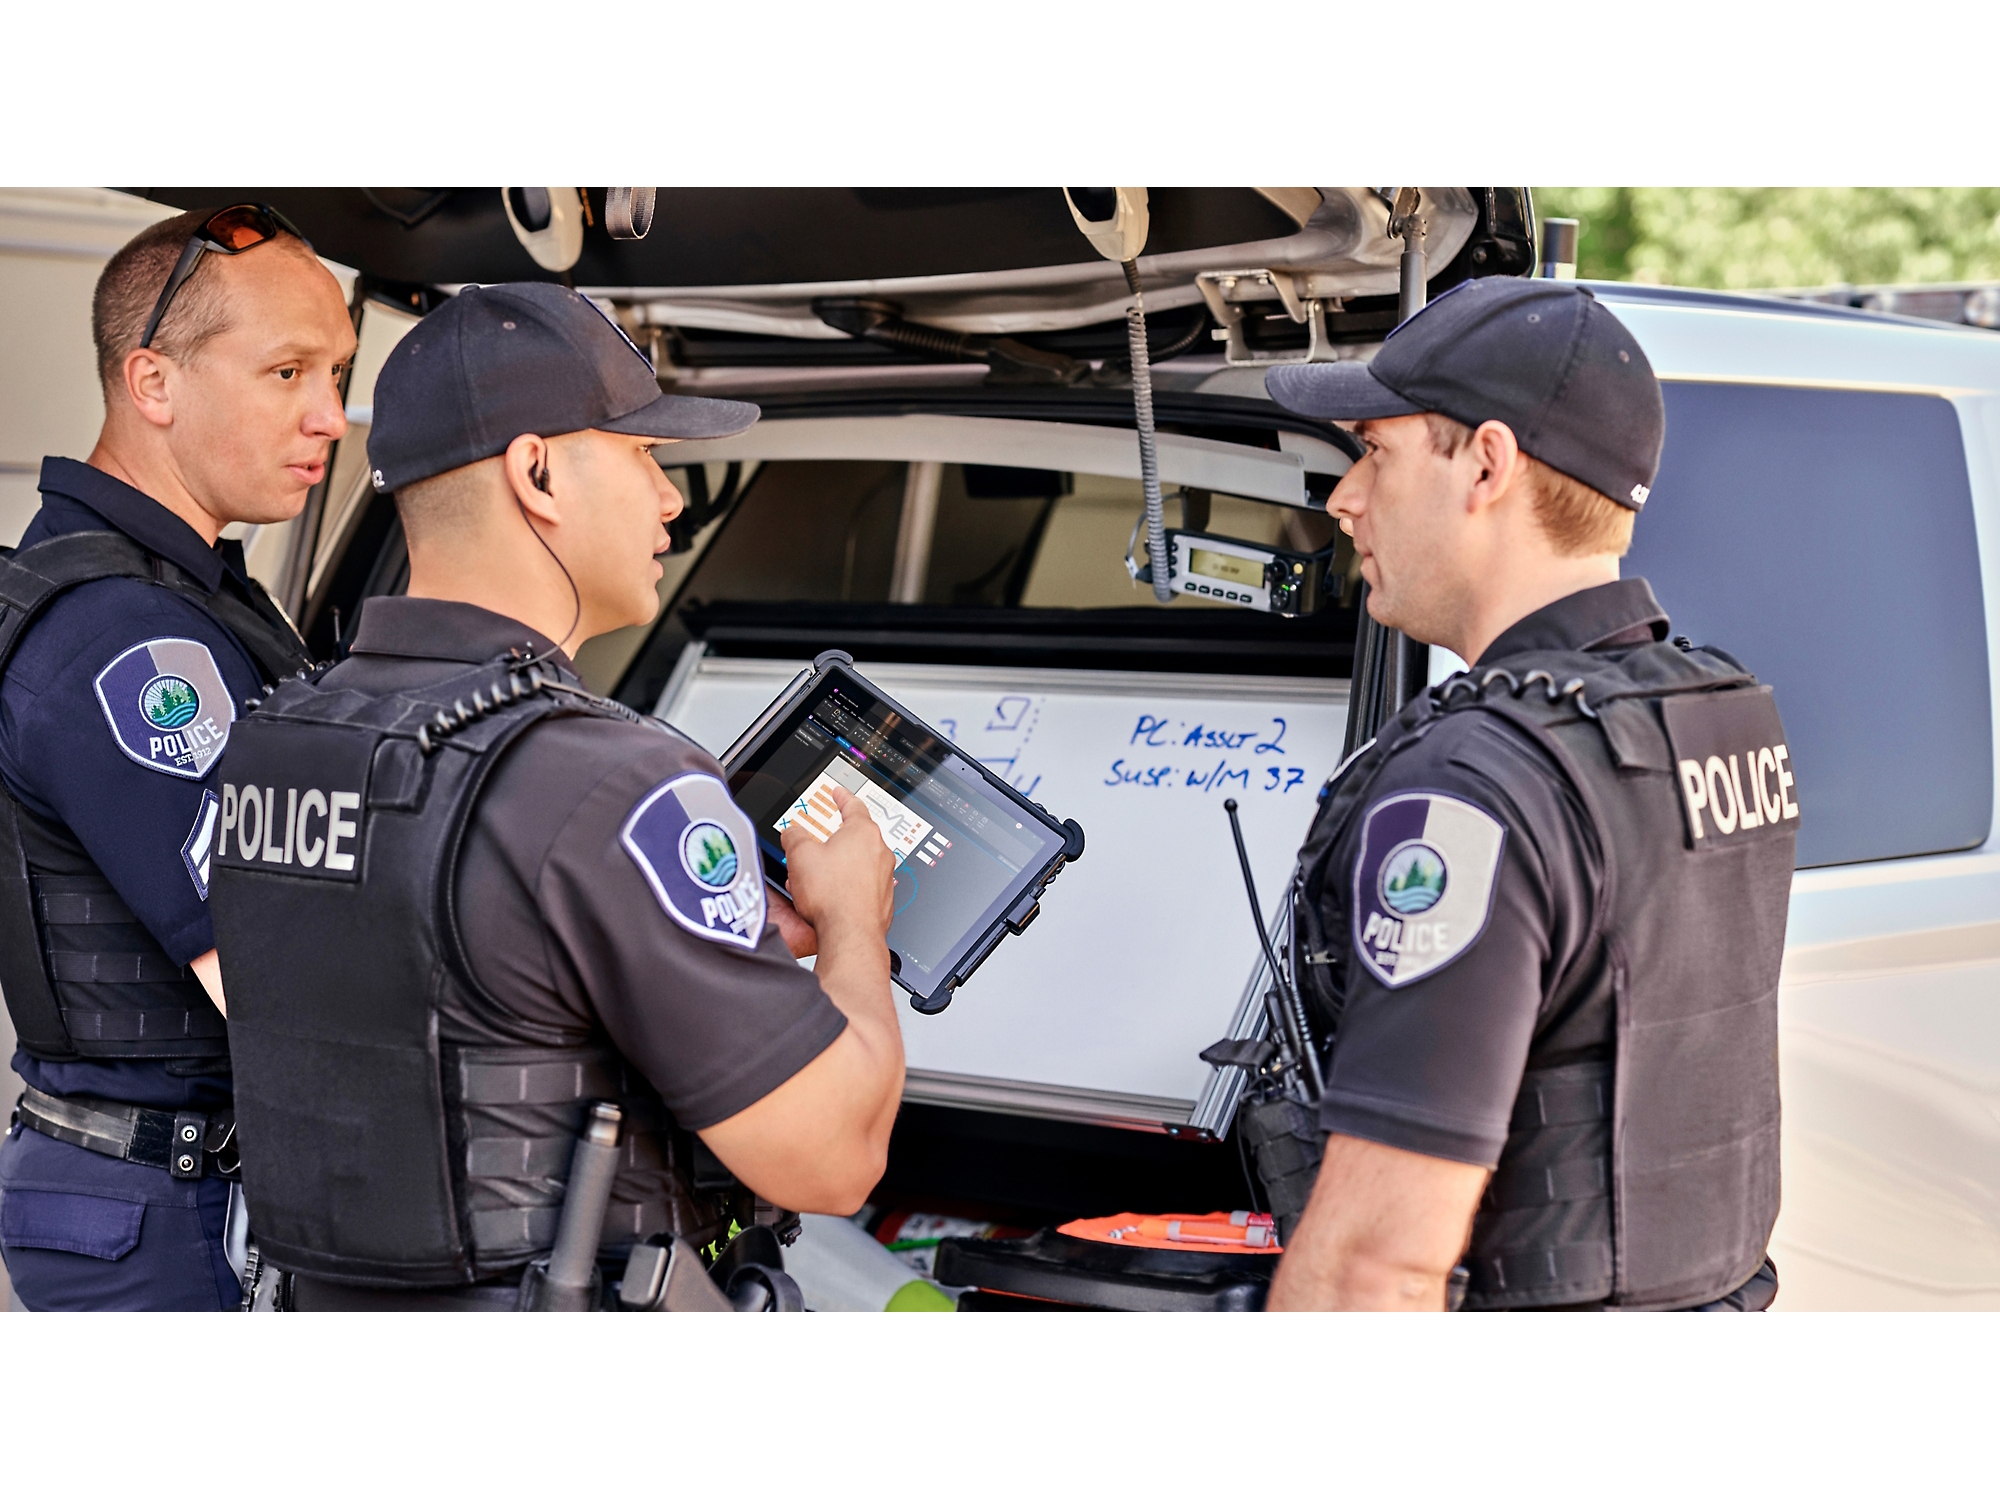 Trois policiers passent en revue des informations sur une tablette numérique à côté de leur voiture de patrouille dont le coffre est ouvert